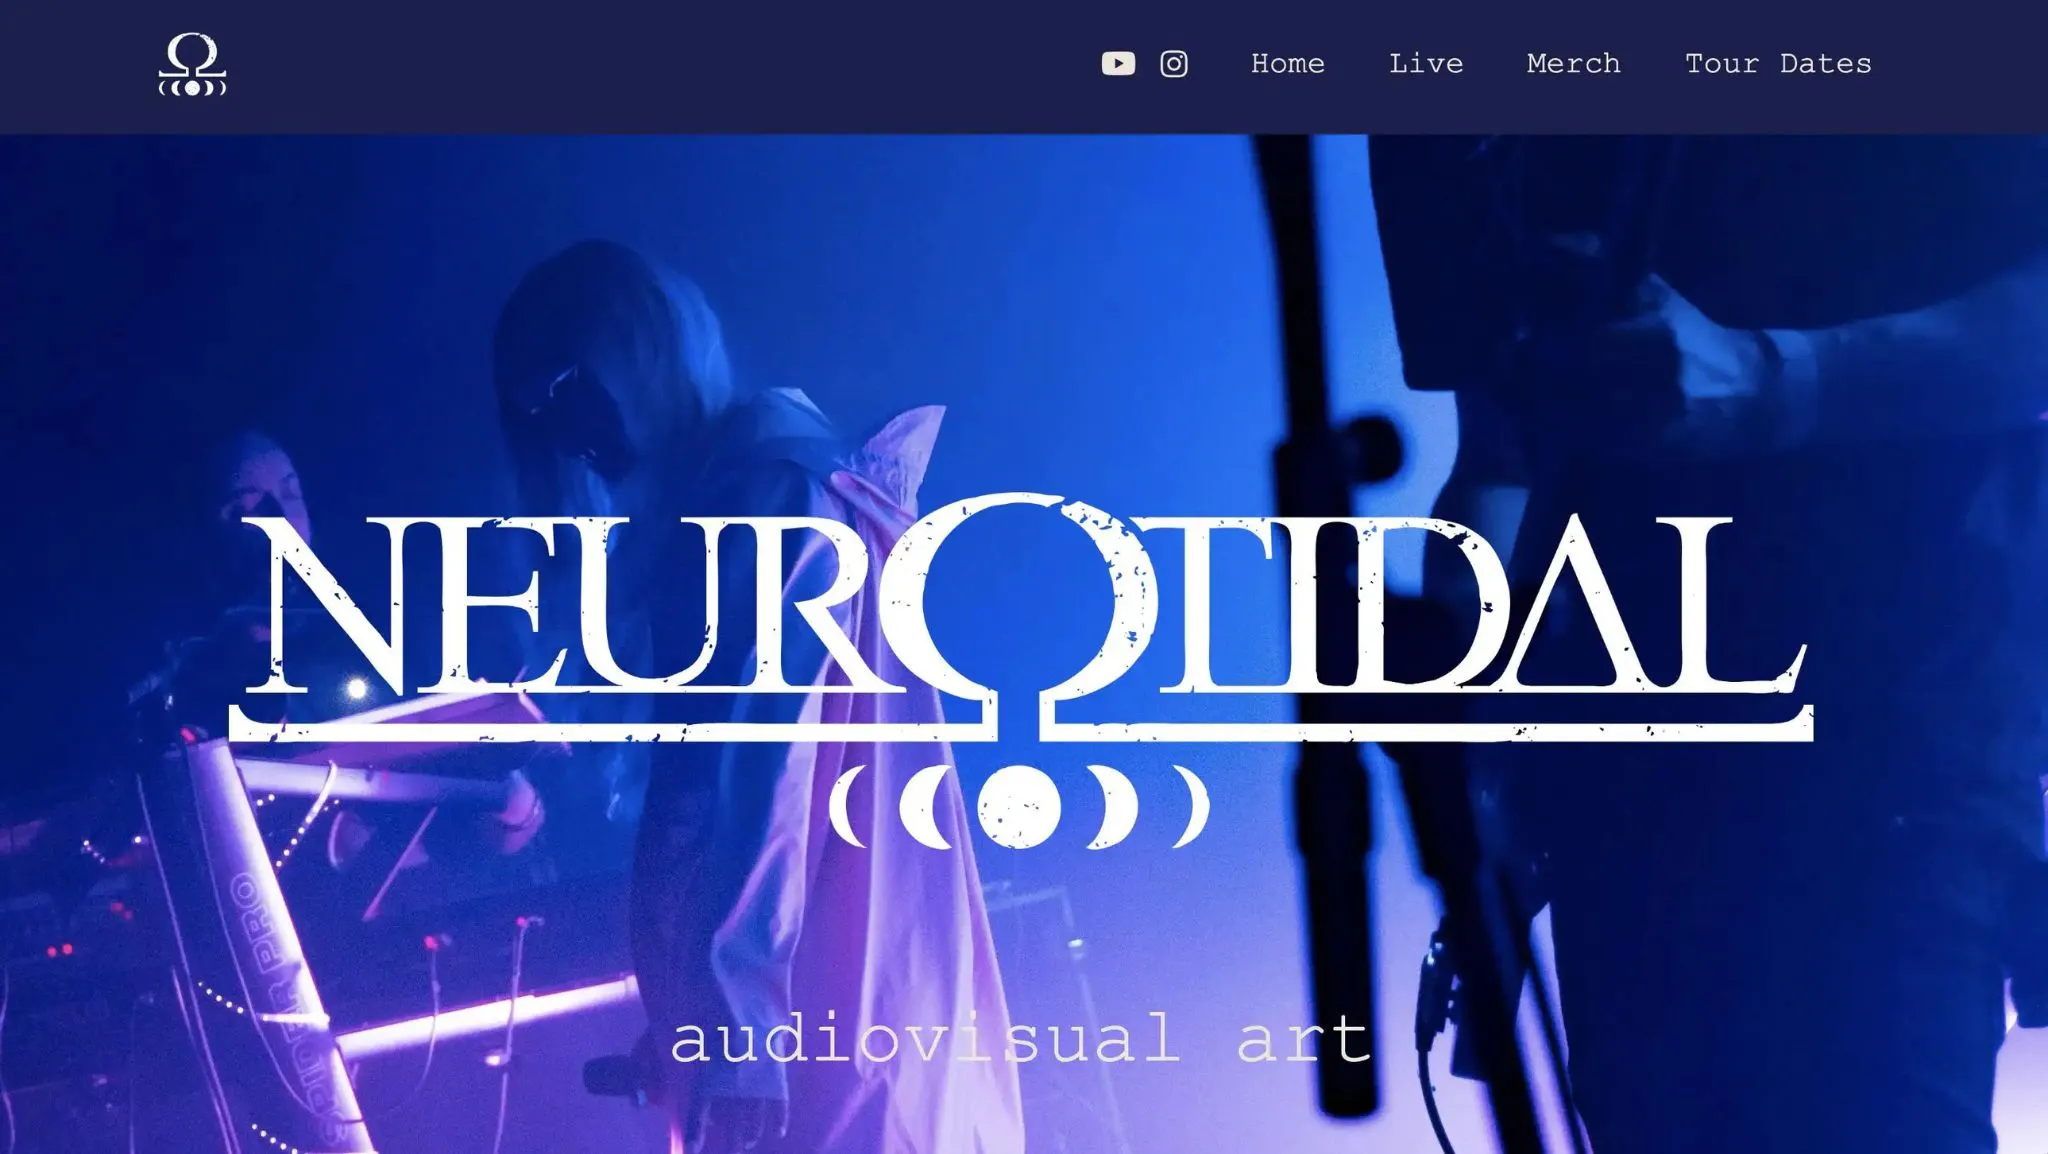 Website erstellt für die Metal-Band Neurotidal